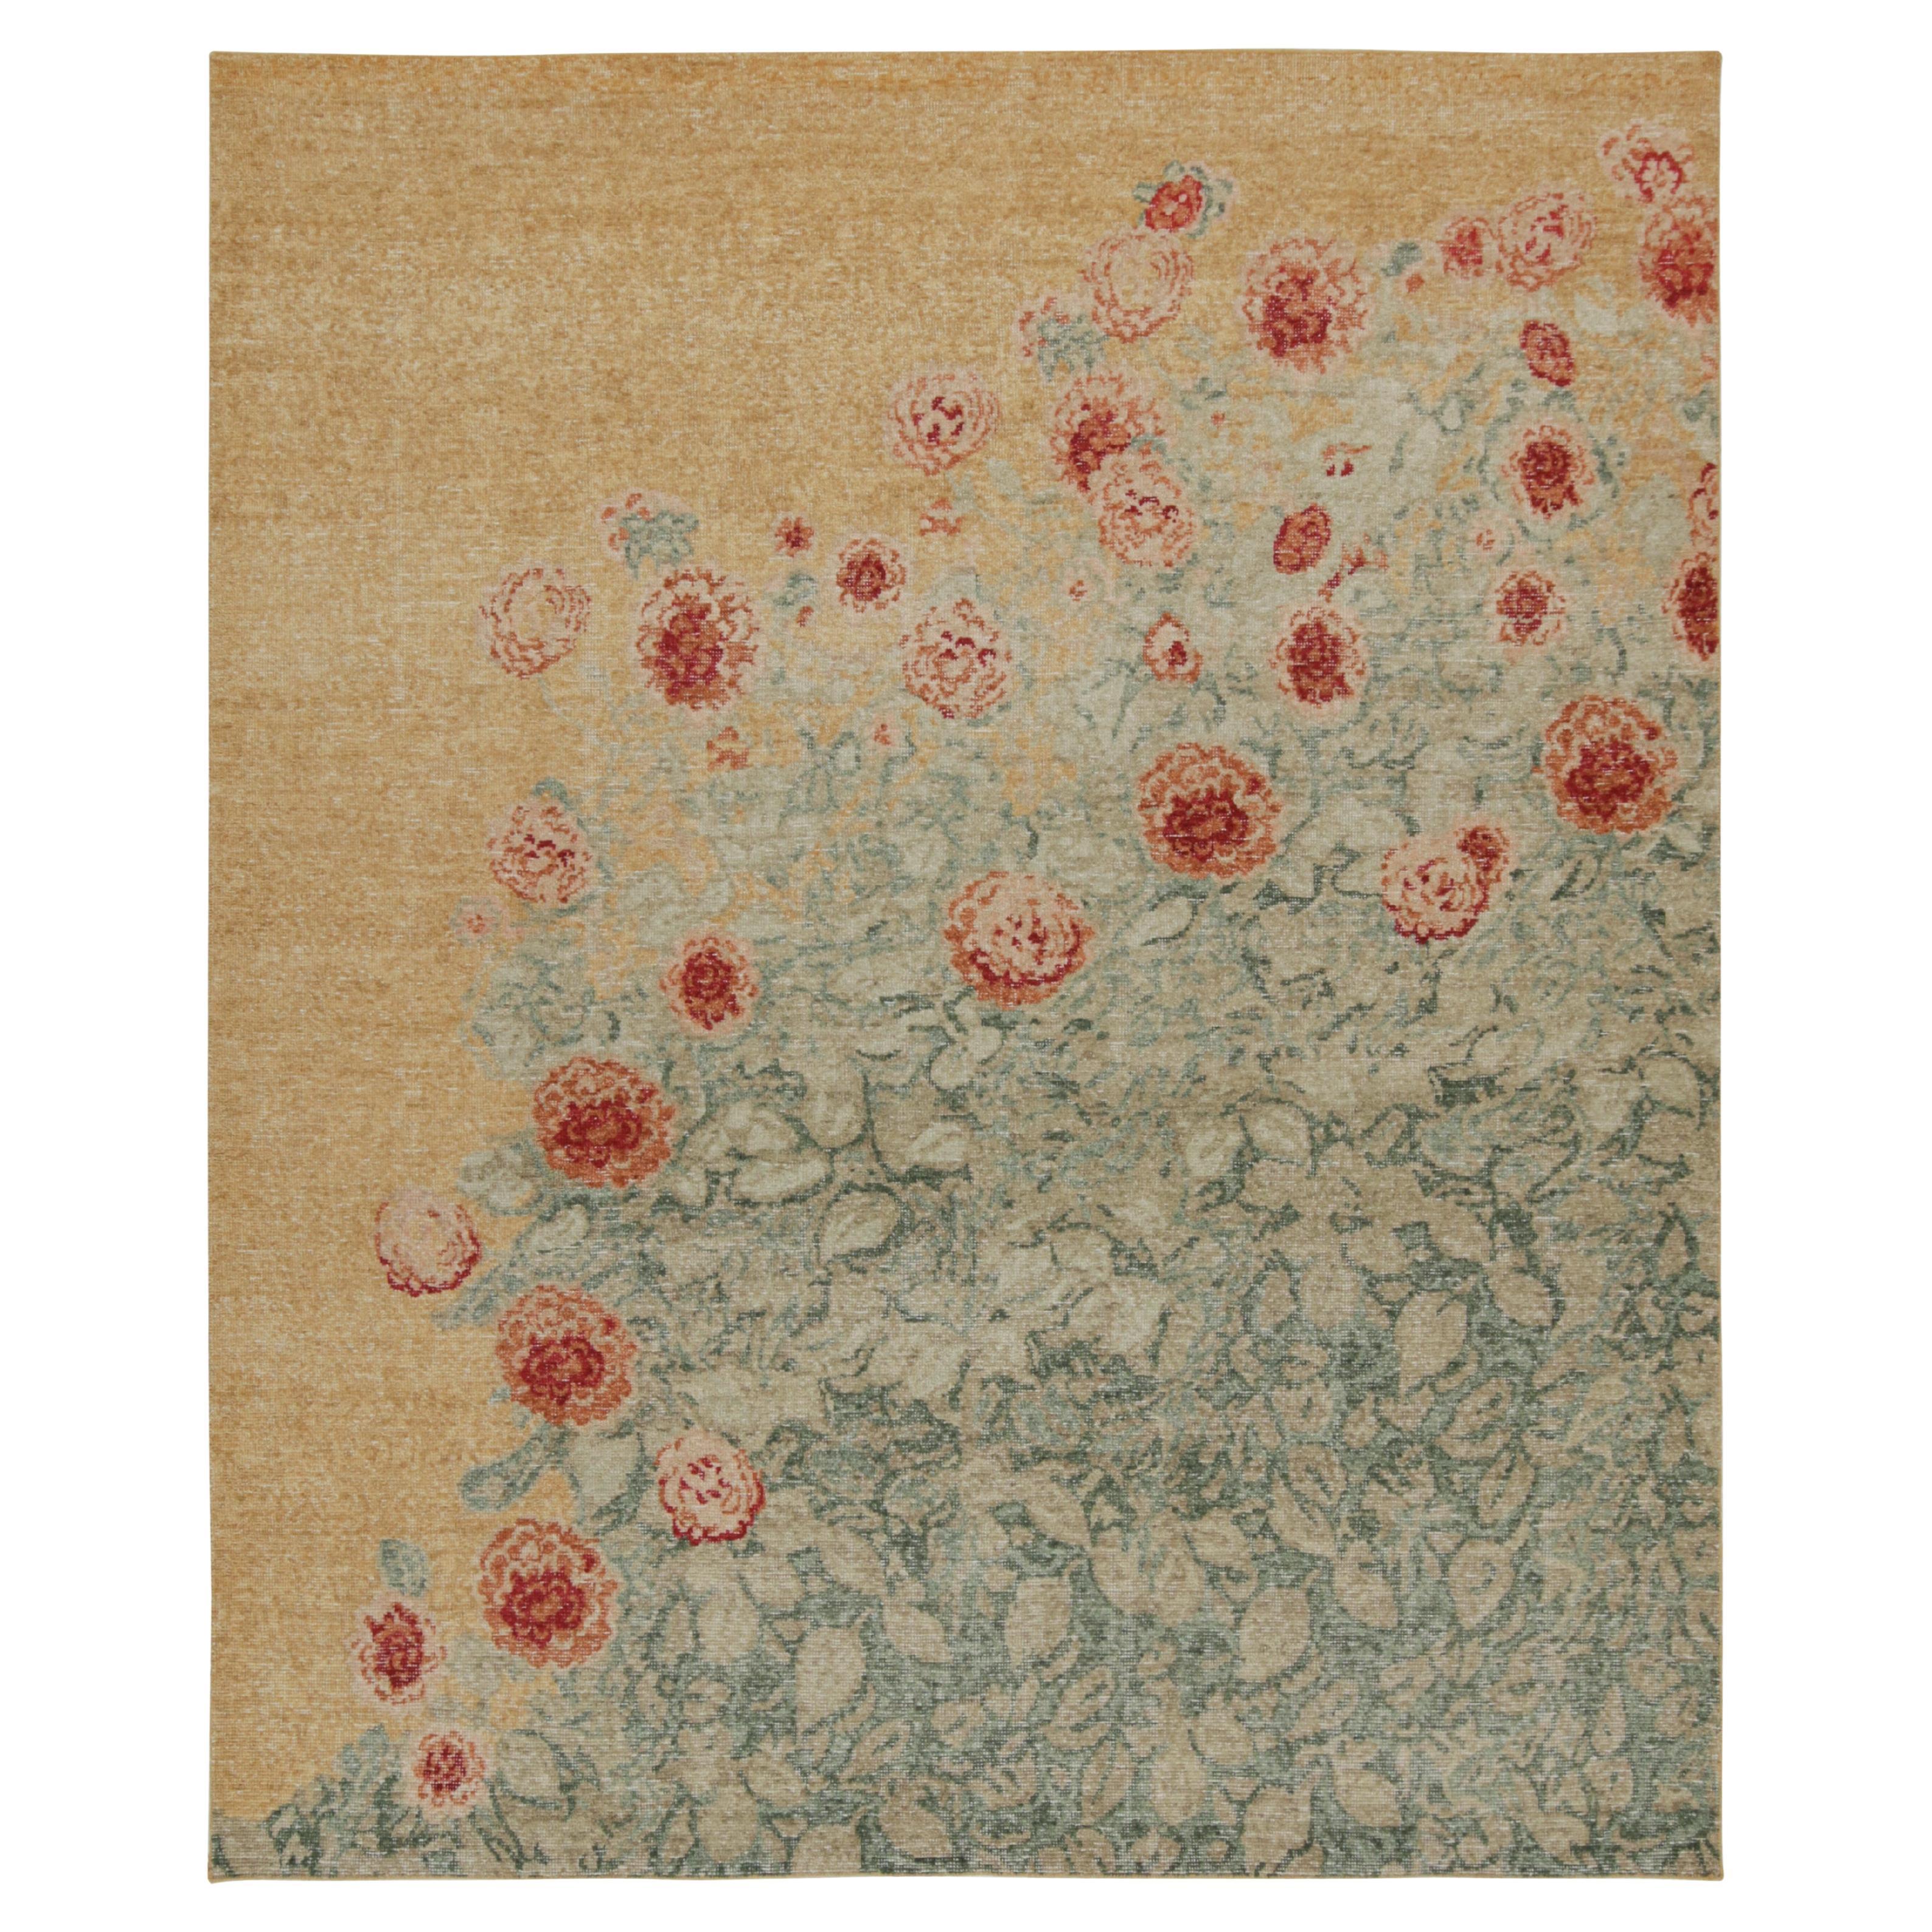 Rug & Kilim's Transitional-Teppich im Distressed-Stil mit polychromatischen Blumenmustern